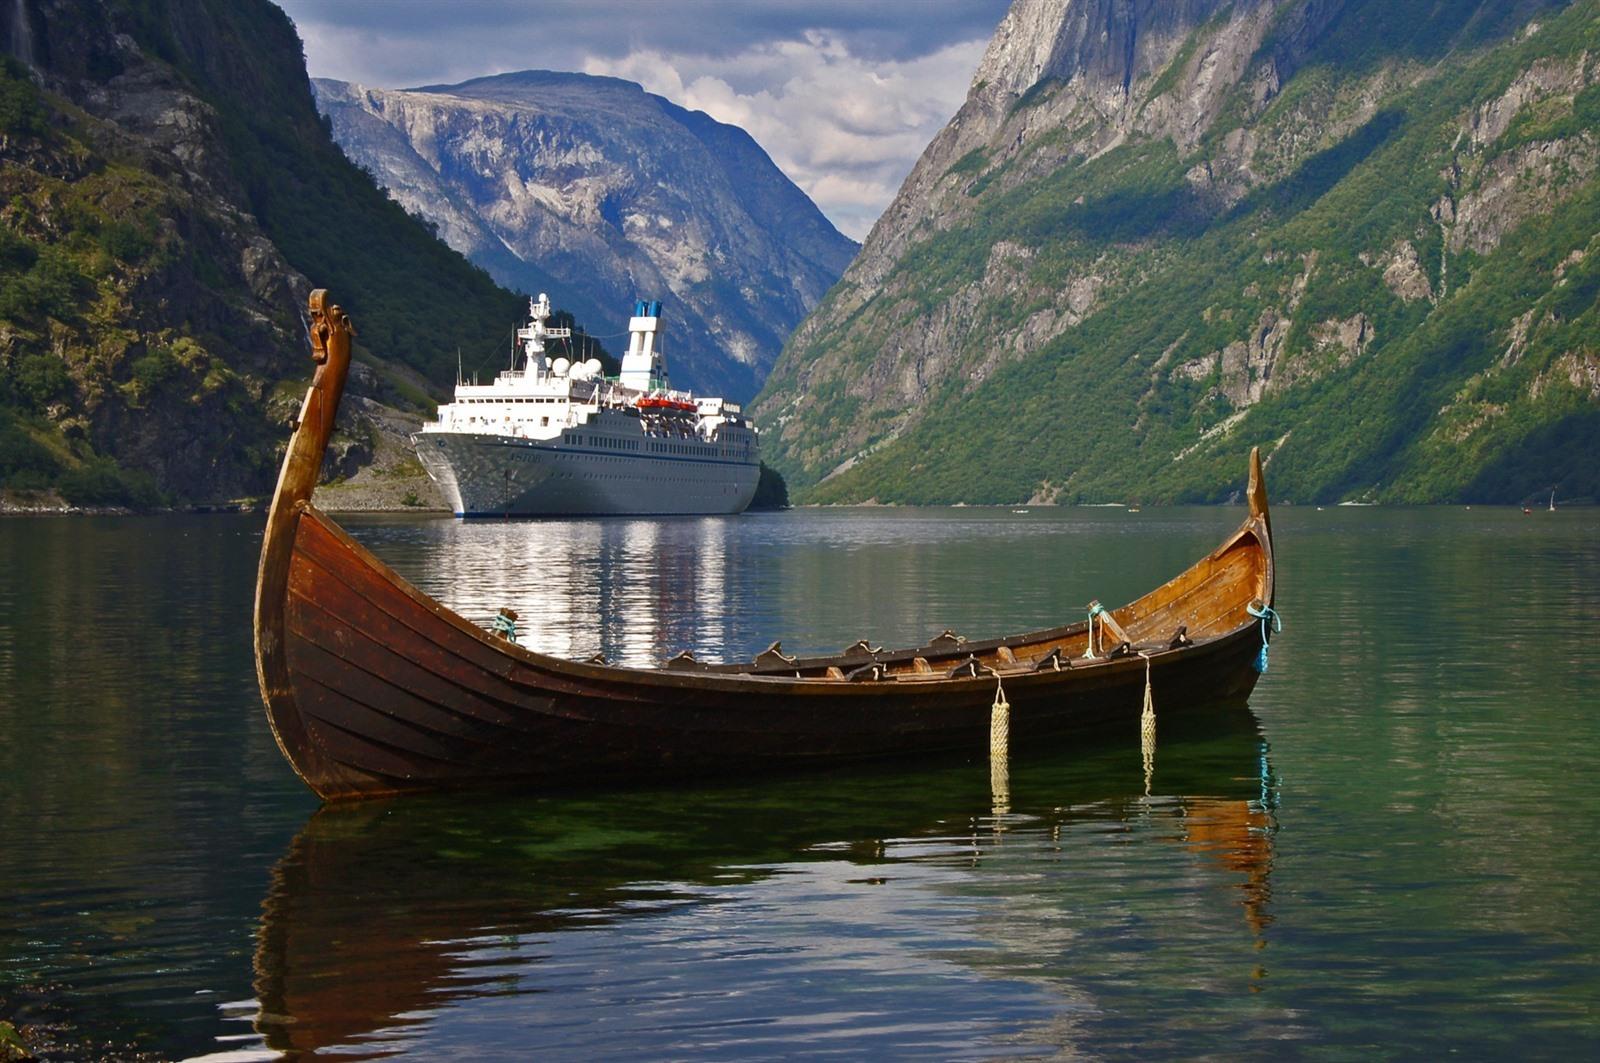 ervaringen cruise noorse fjorden